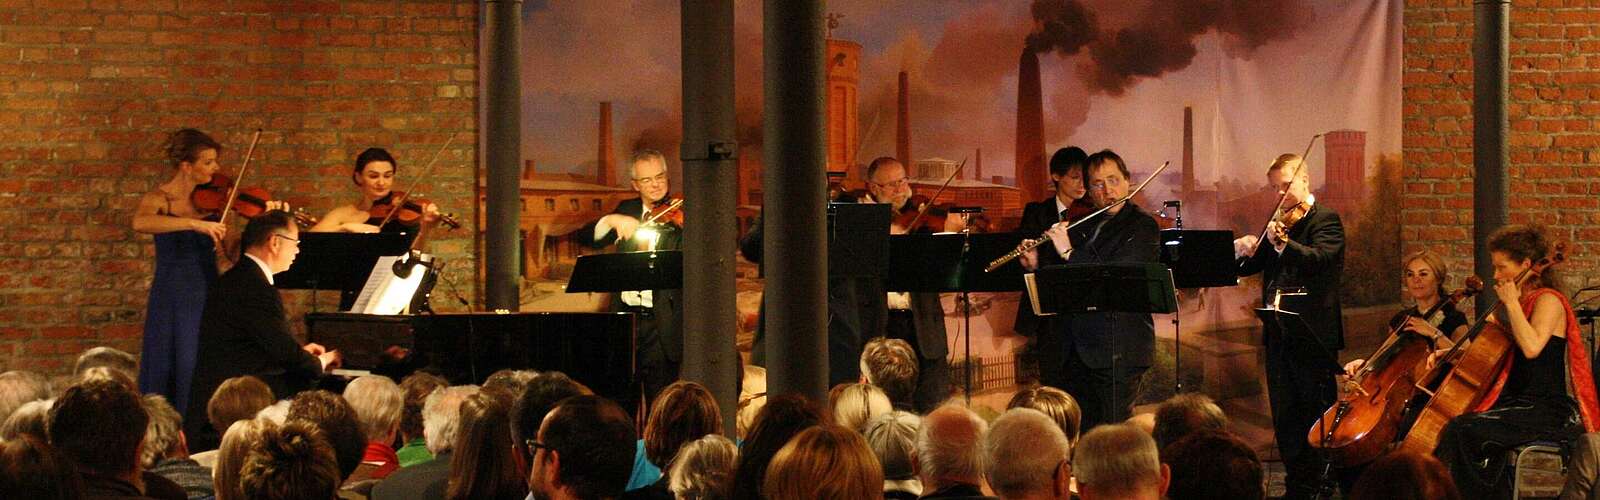 Konzert auf dem Landgut Stober,
        
    

        Picture: Havelländische Musikfestspiele gGmbH/Timo Fox